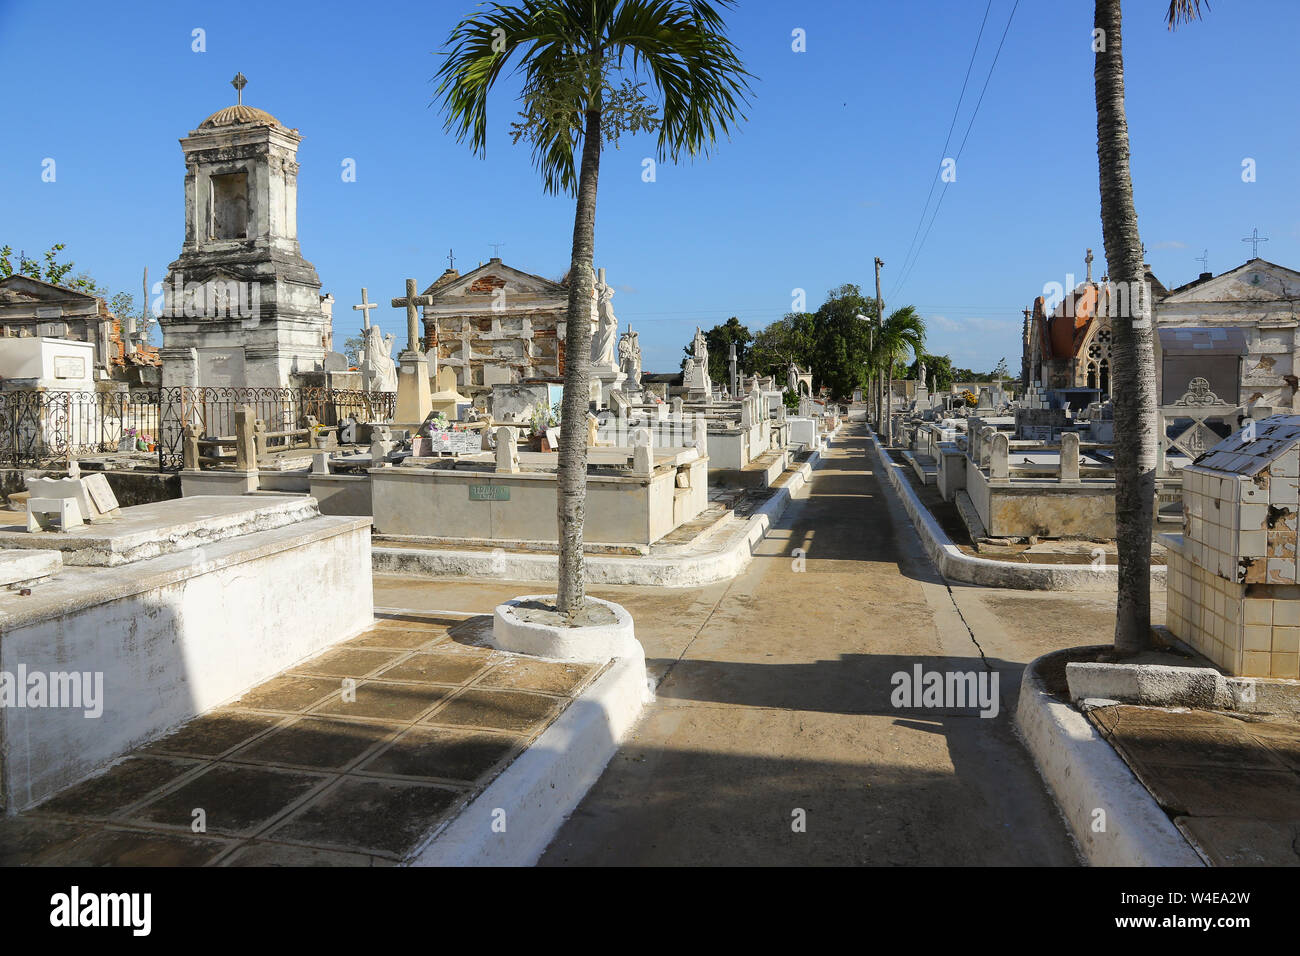 Camagüey, Cuba - Cemetery Stock Photo